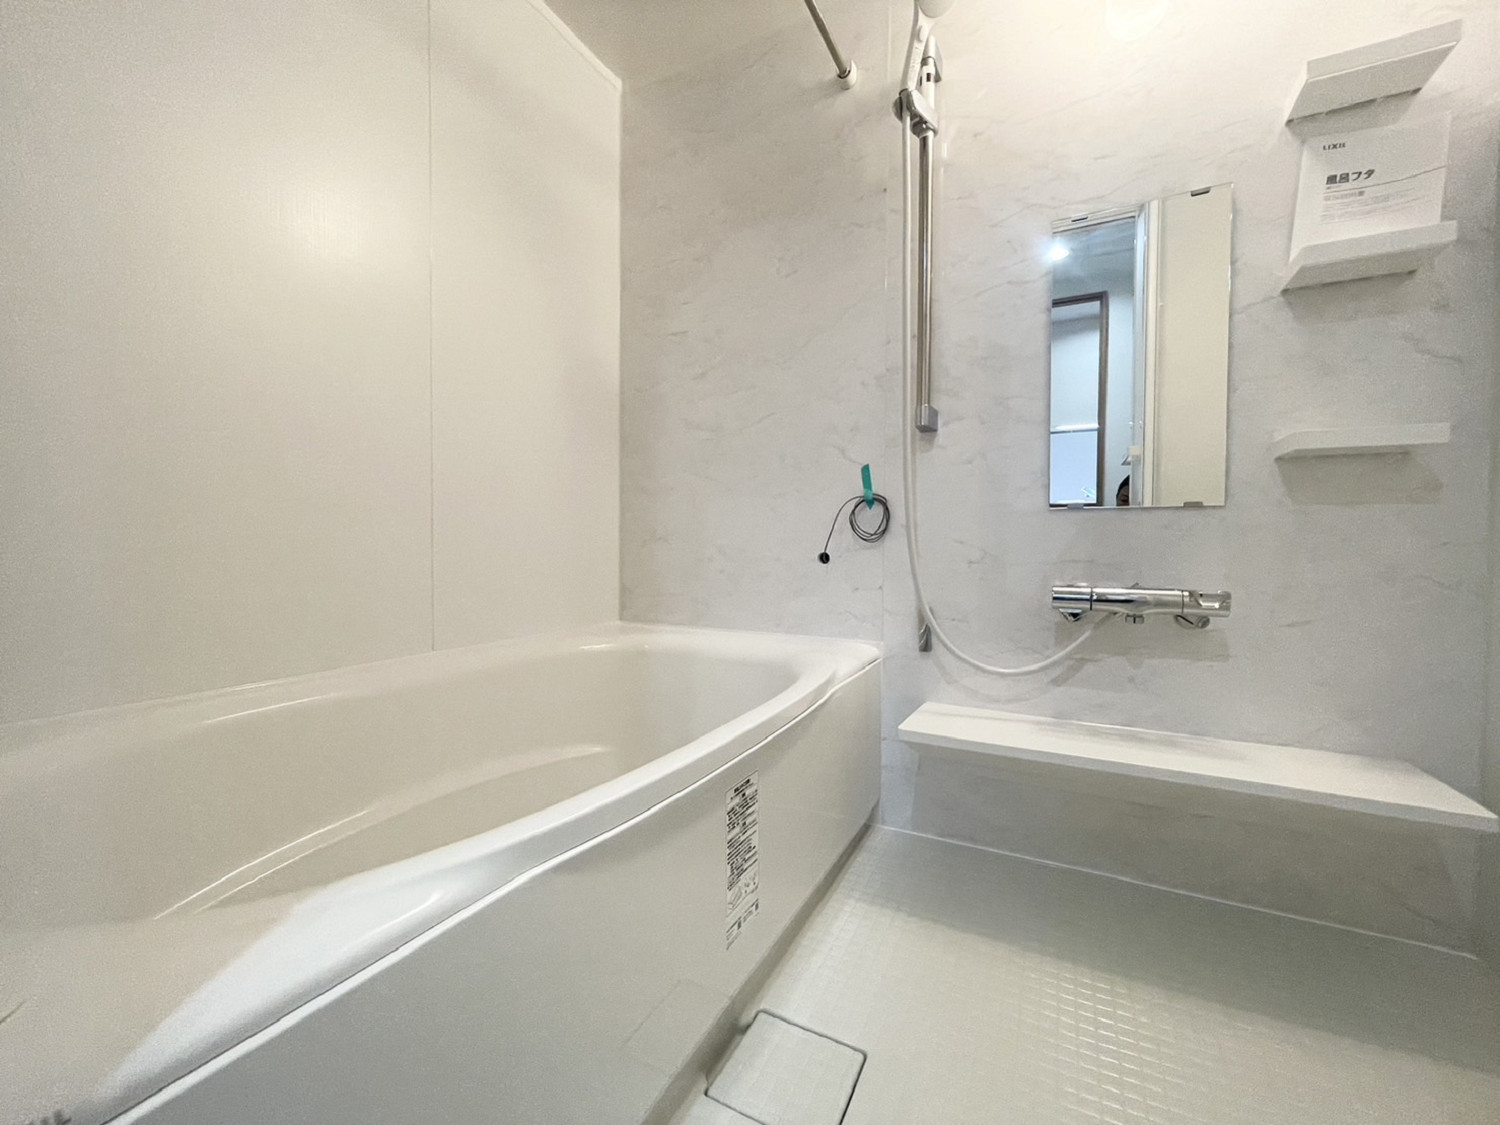 J-シティオ・メイツ和光　バスルーム ホワイトで纏められていて清潔感のあるバスルームになっています✨浴室乾燥機も完備しているので、部屋干しやカビ対策にご利用ください！設備が整っていると、快適なバスタイムが叶って嬉しいですね。